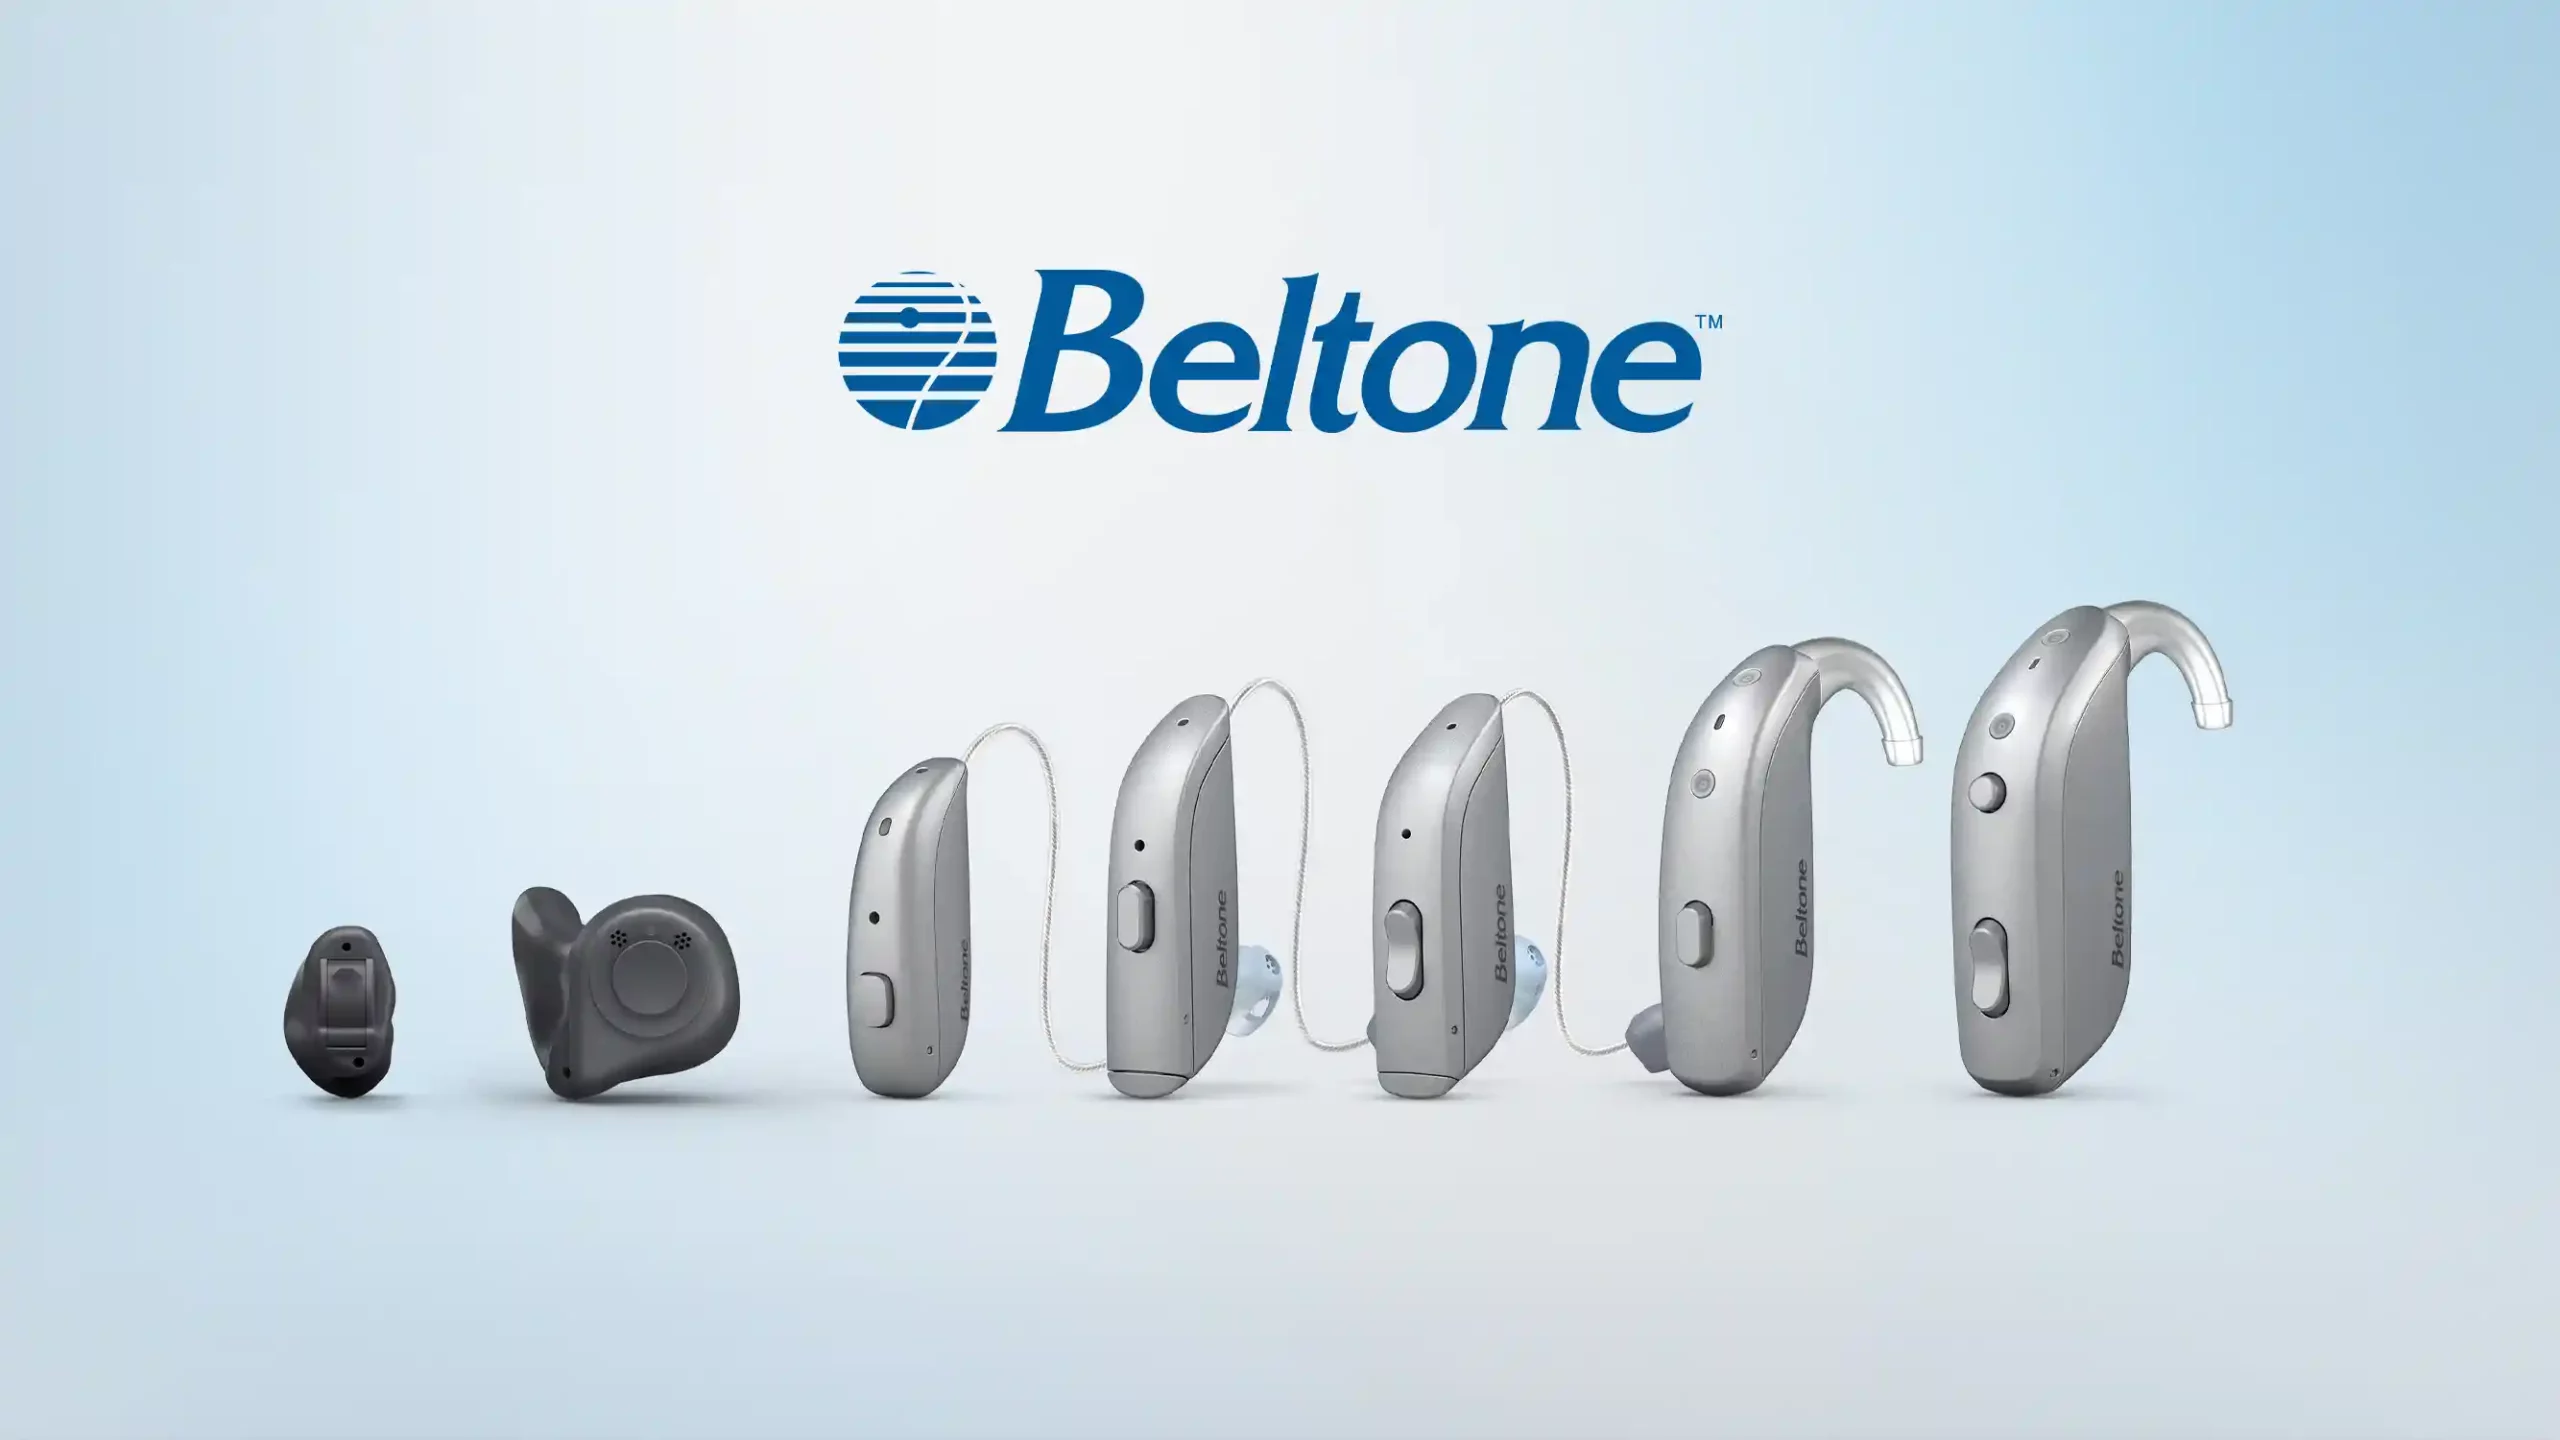 Hörakustiker berichten über ihre Erfahrungen mit der exklusiven Fachhandelsmarke Beltone